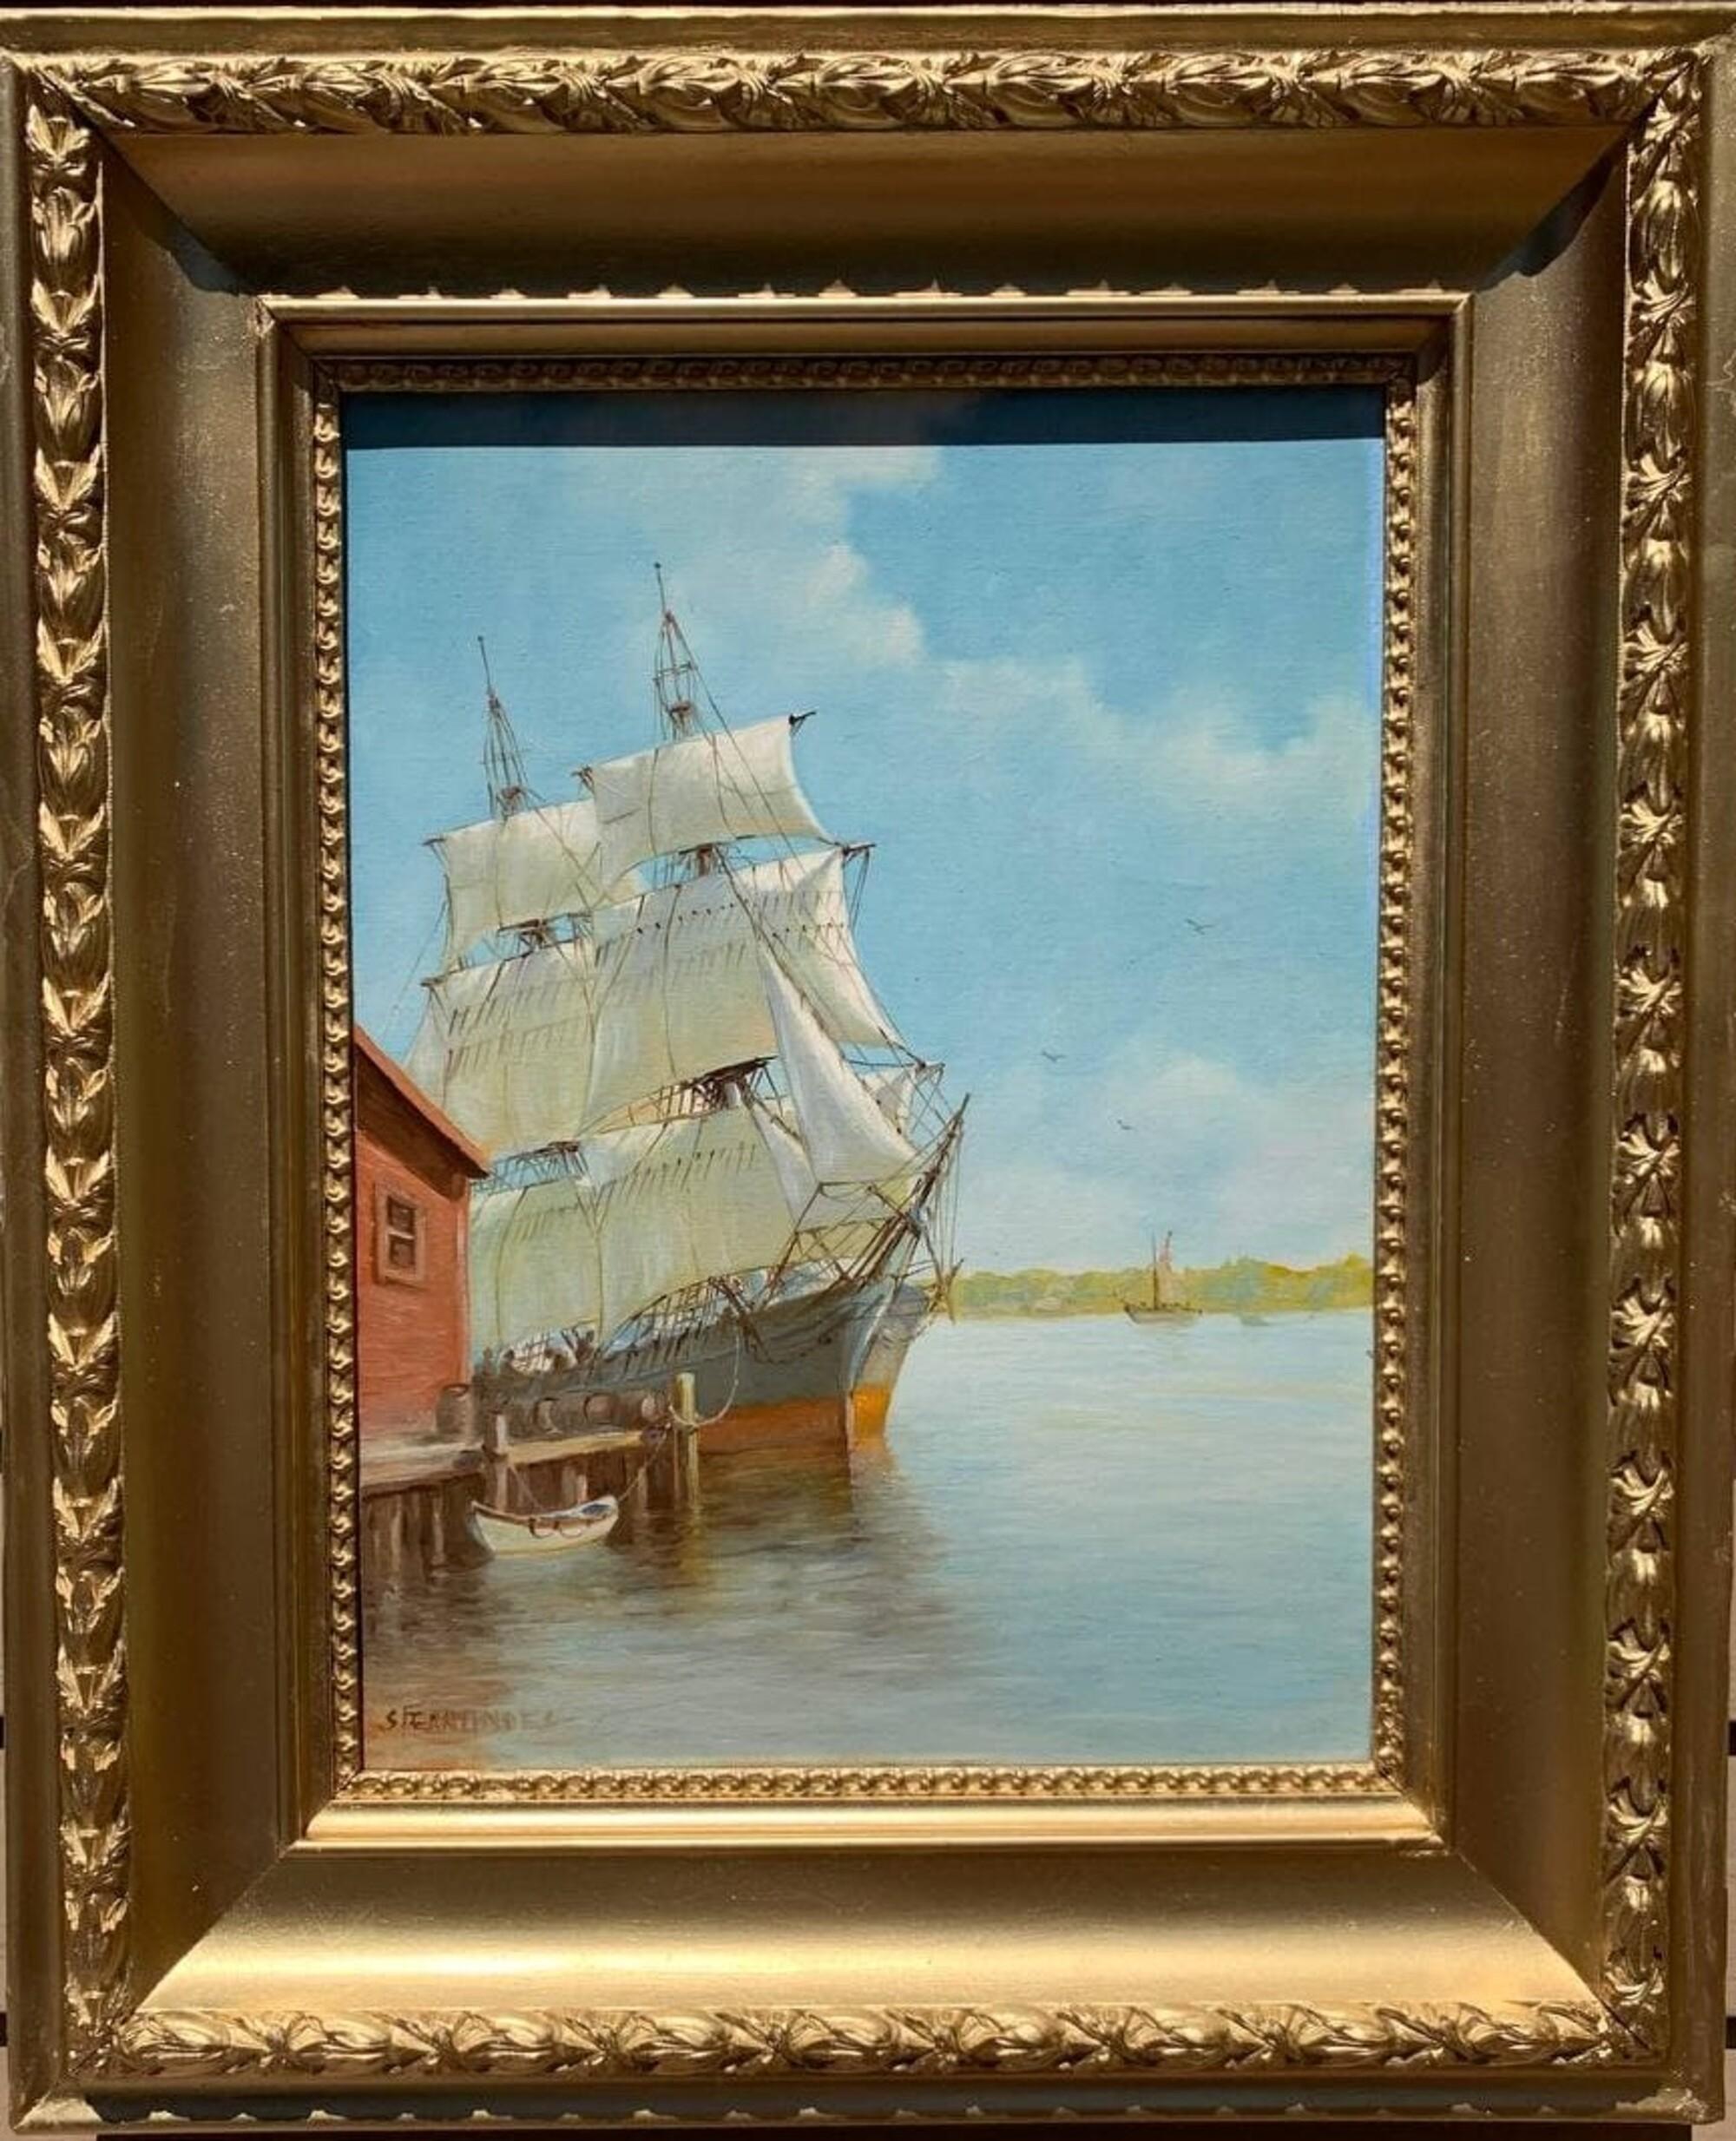 Il s'agit d'une incroyable peinture à l'huile originale sur toile du célèbre peintre brésilien-américain Humberto da Silva Fernandes (1937-2005) représentant un navire à l'embarcadère, une scène de quai dans un port, un paysage marin.

Humberto da